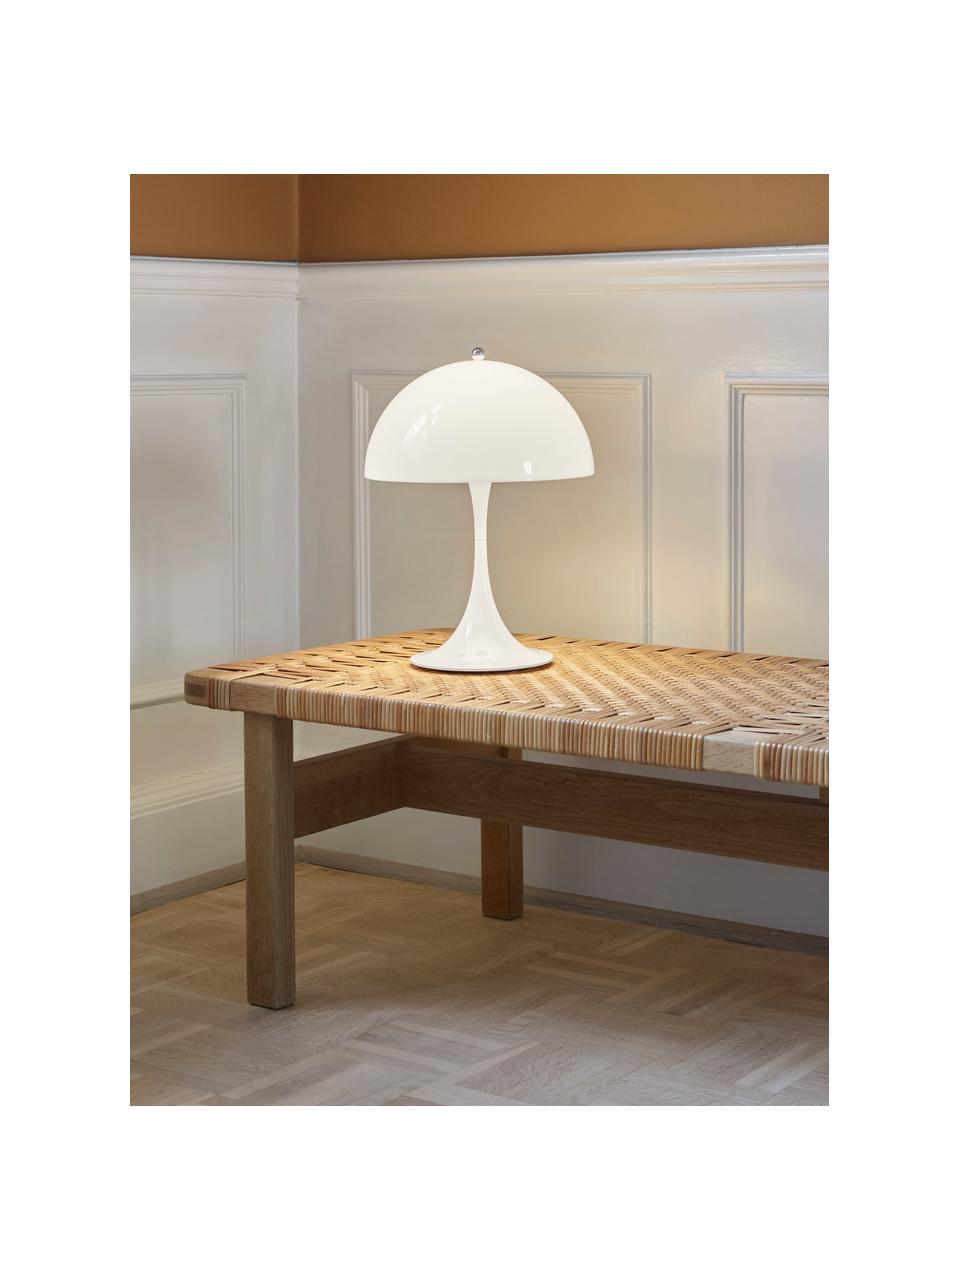 Lámpara de mesa LED regulable Panthella, Al 34 cm, Estructura: aluminio recubierto, Blanco, Ø 25 x Al 34 cm